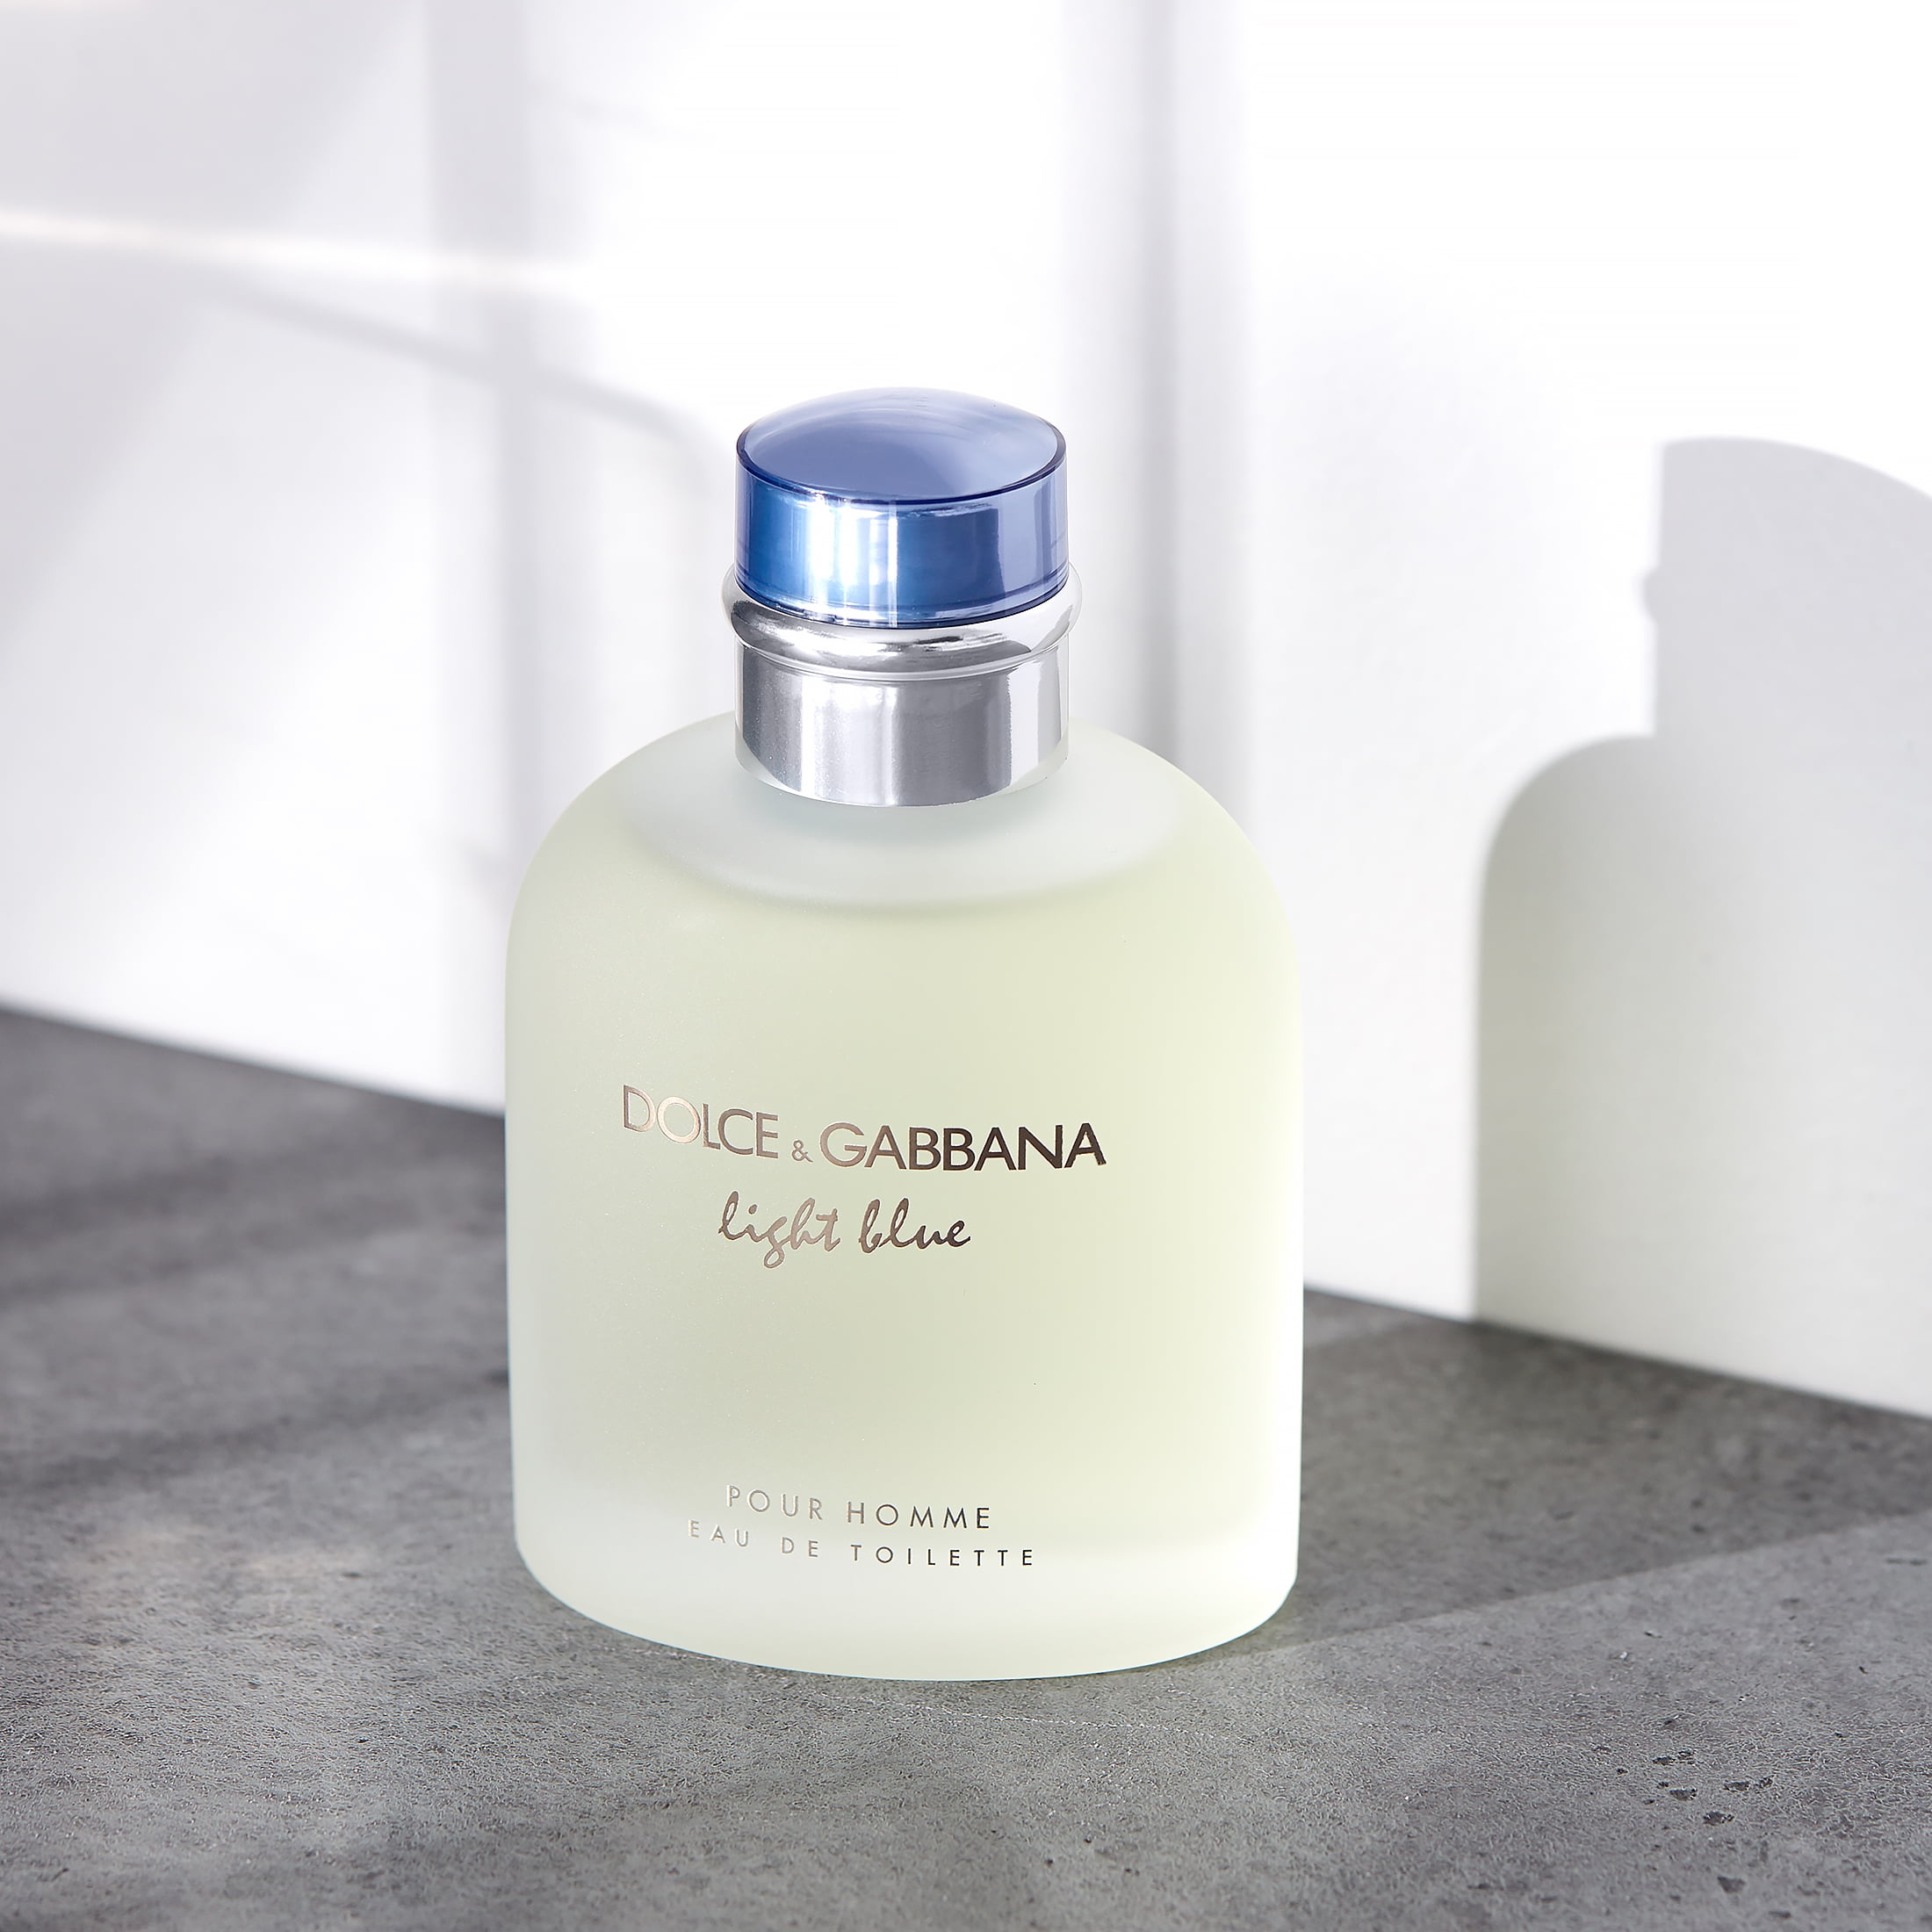 Dolce & Gabbana Light Blue Eau de Toilette Men – Evoke Scents